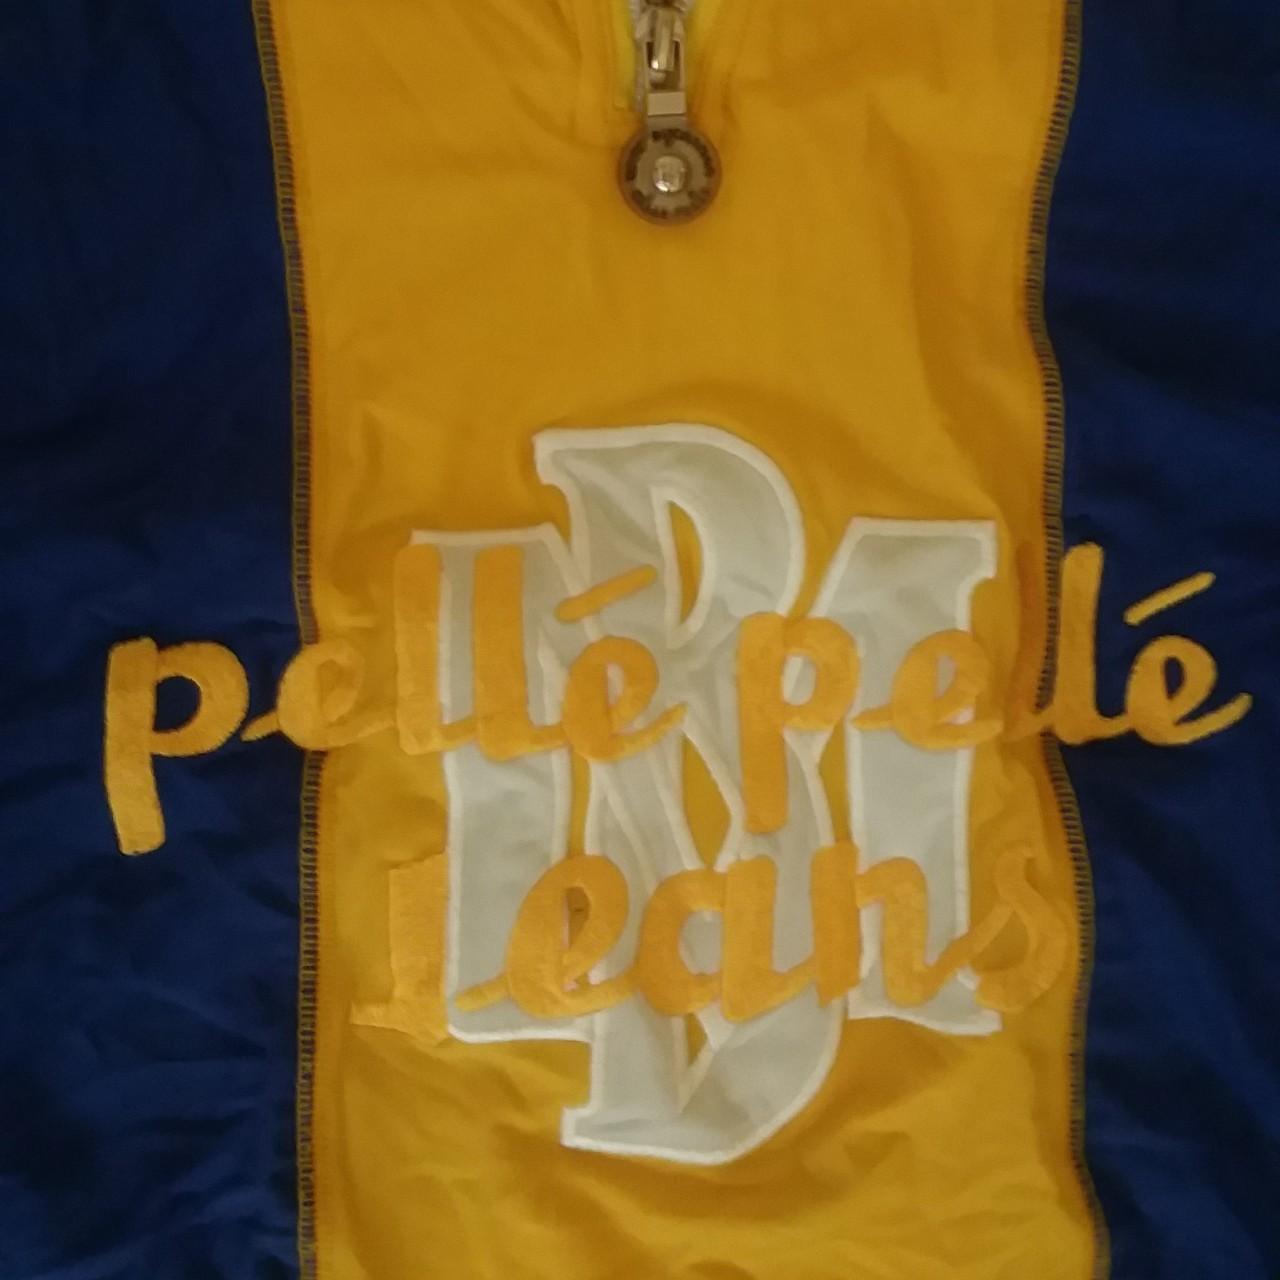 Pelle Pelle Men's T-shirt (2)